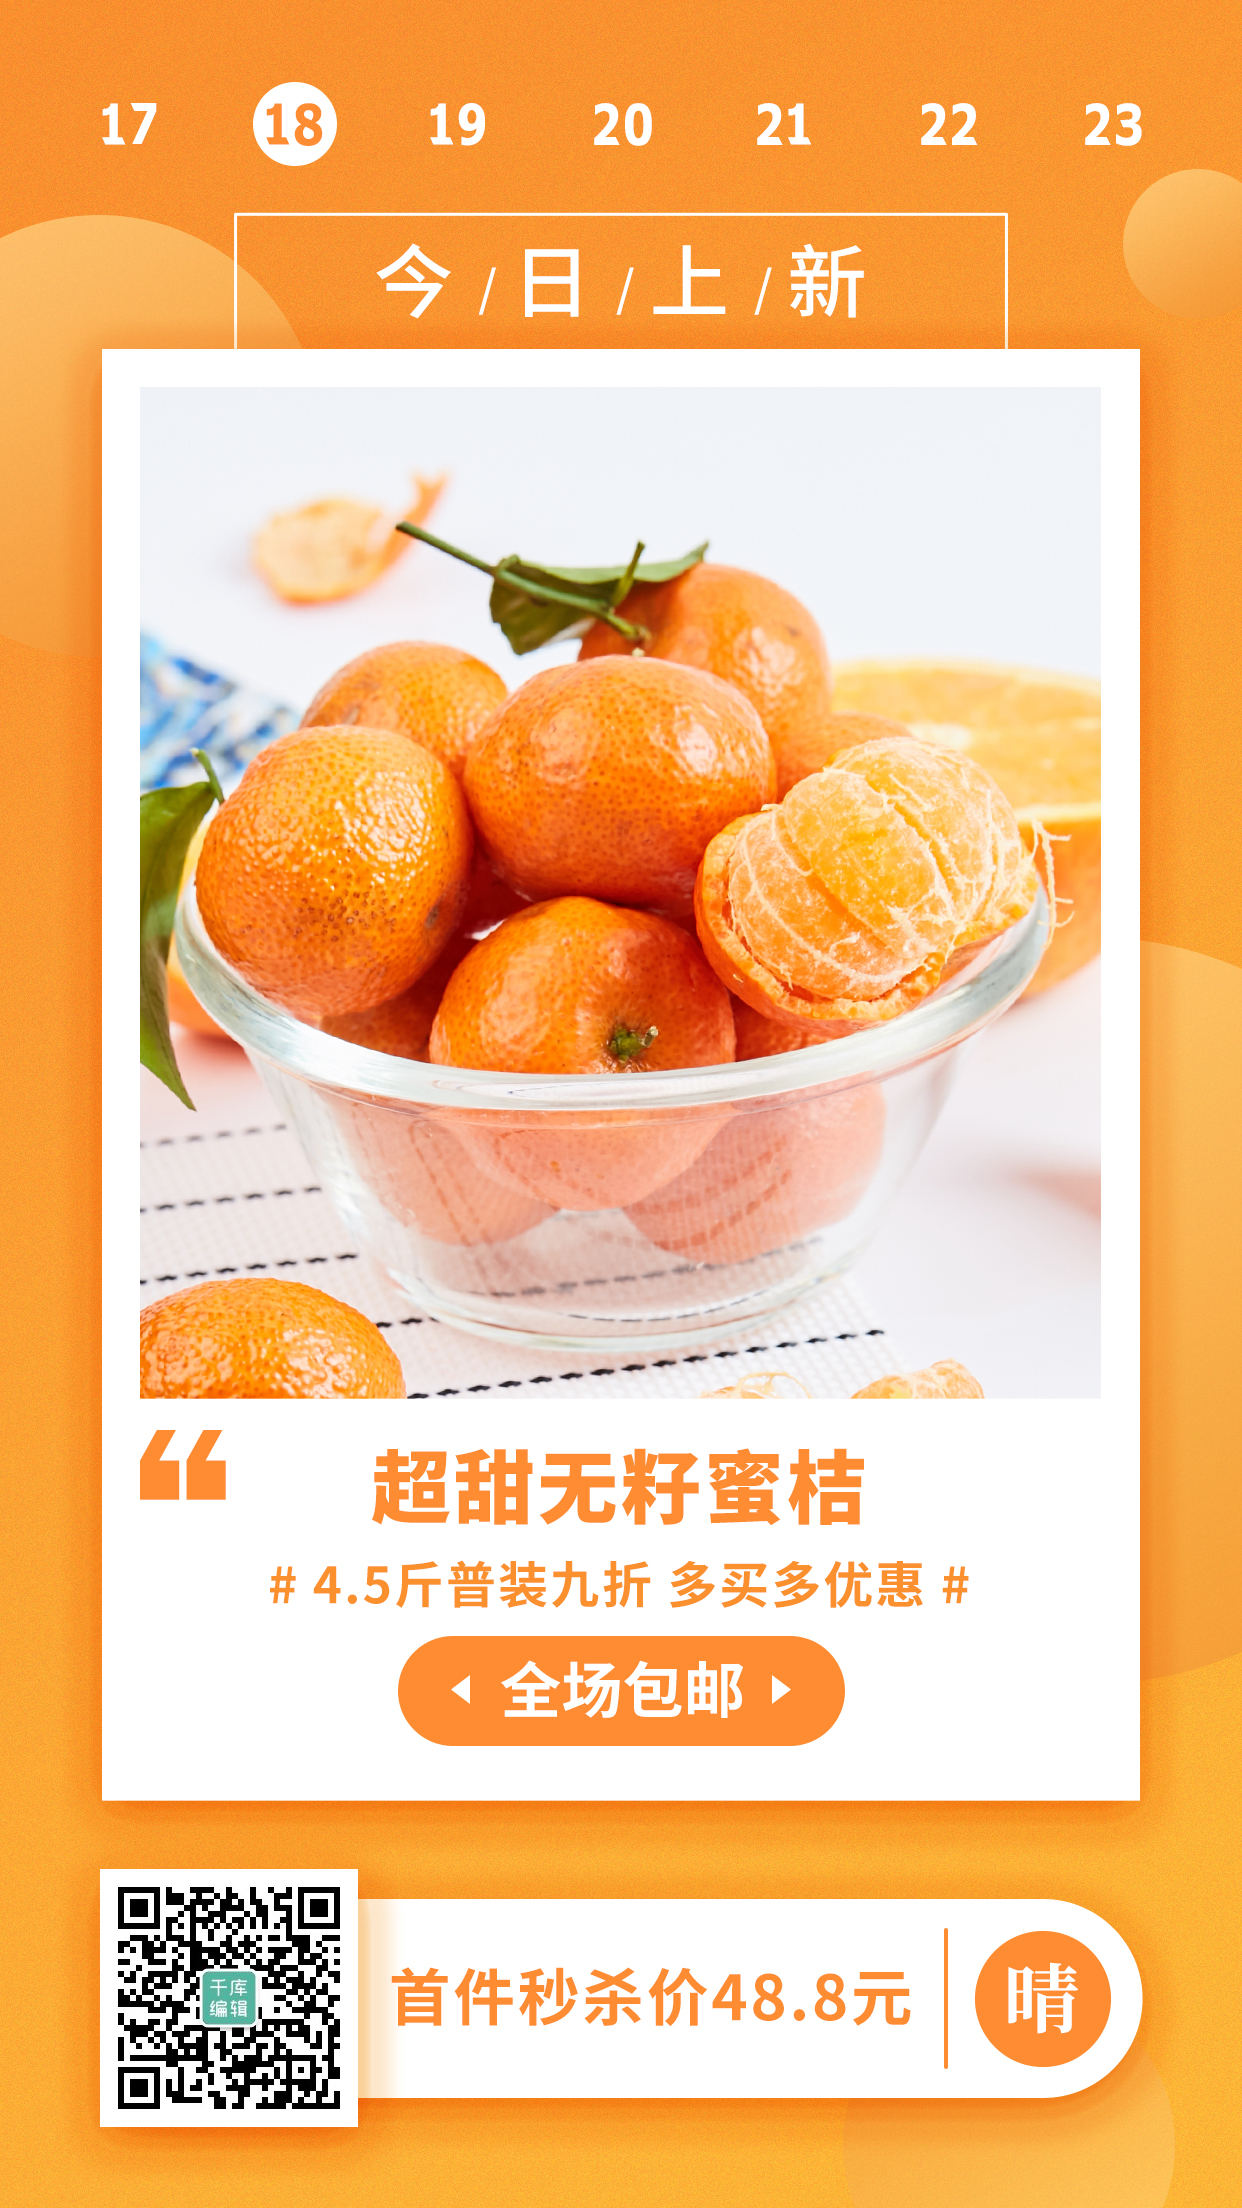 包邮水果产品展示活动促销橙色简约手机海报图片